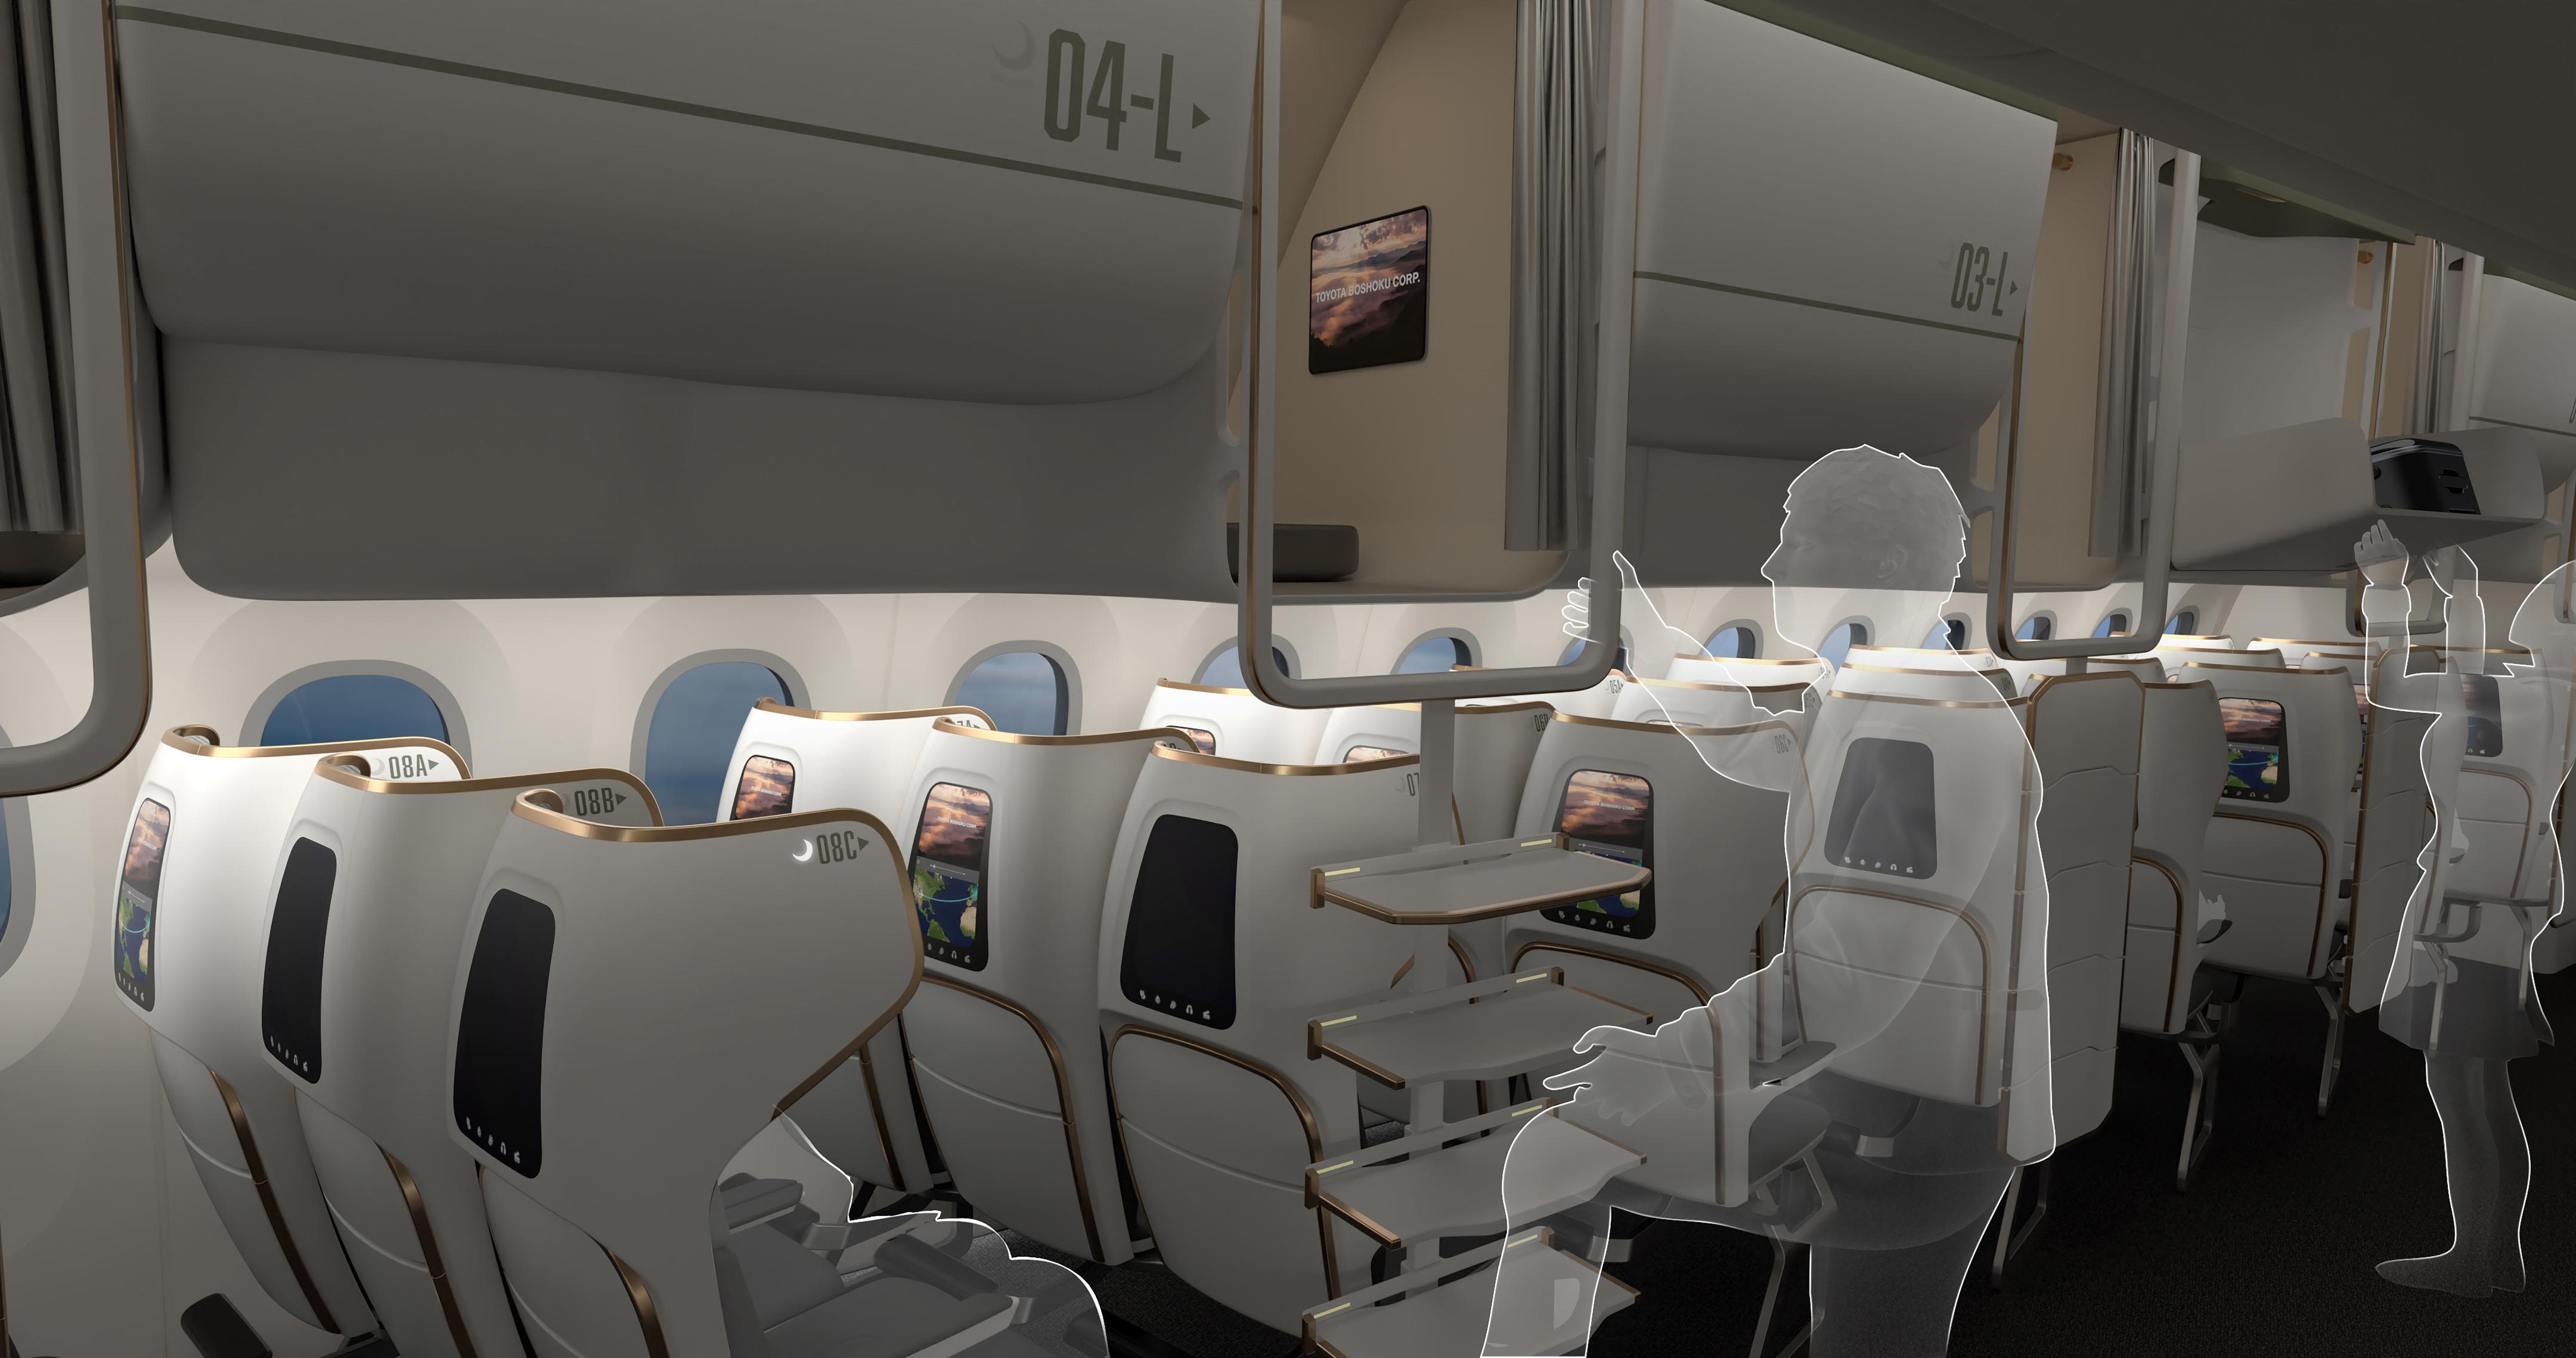 concept passenger aircraft